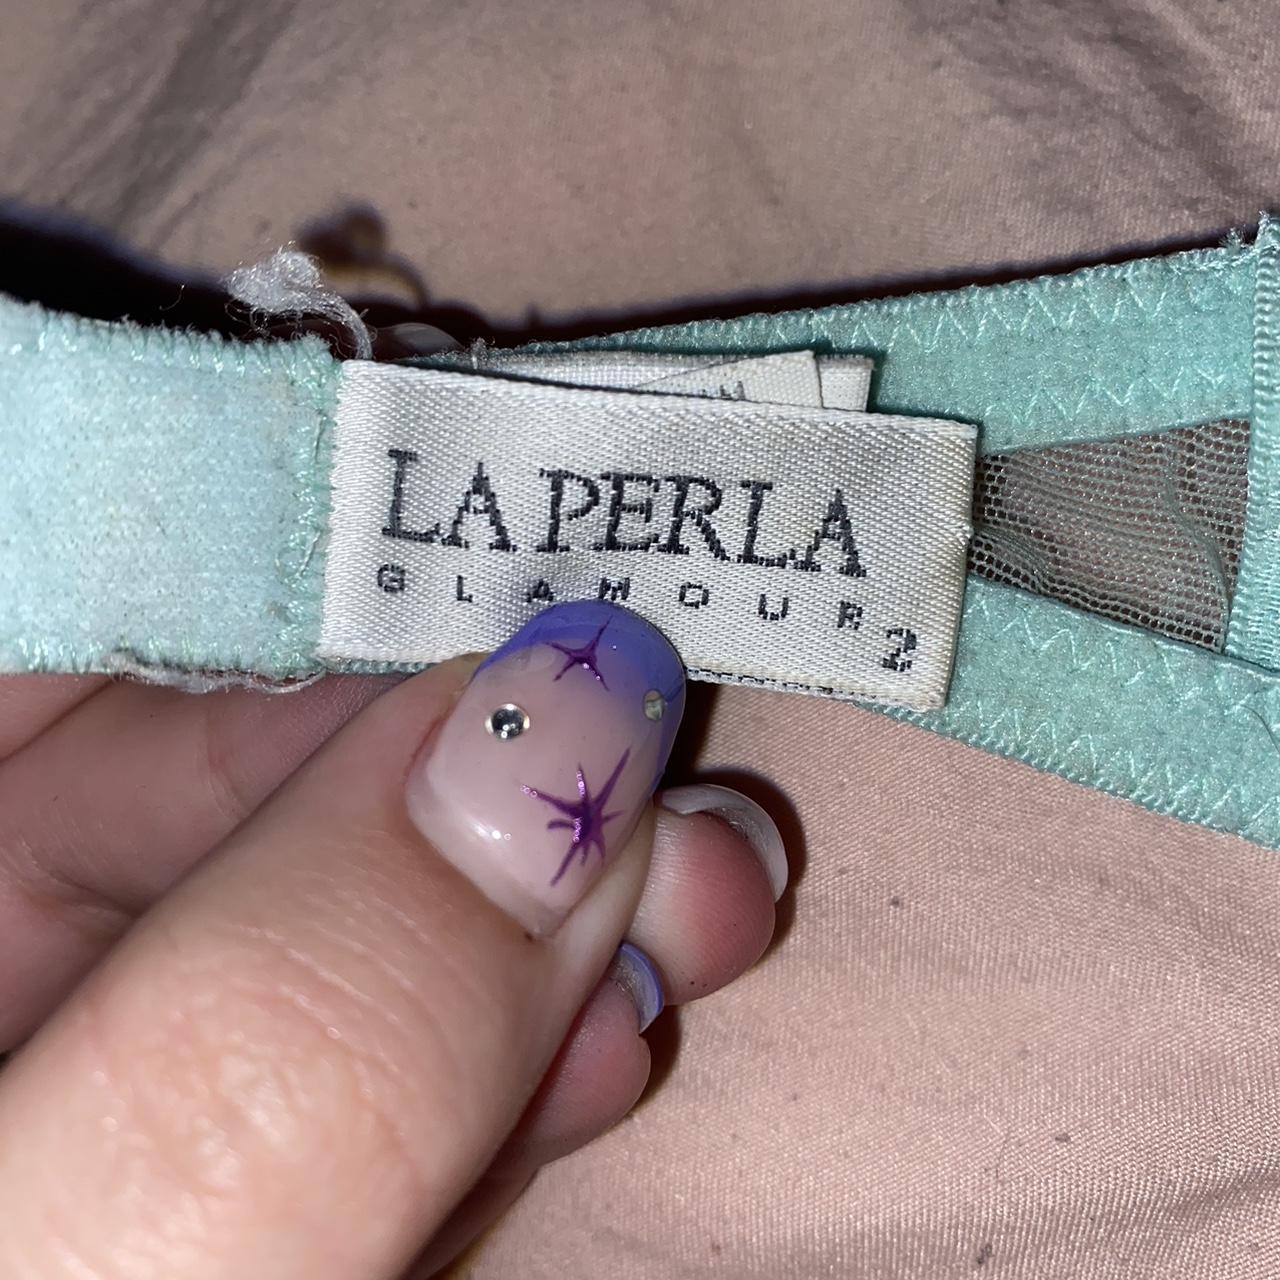 La Perla Women's Blue and Green Bra | Depop